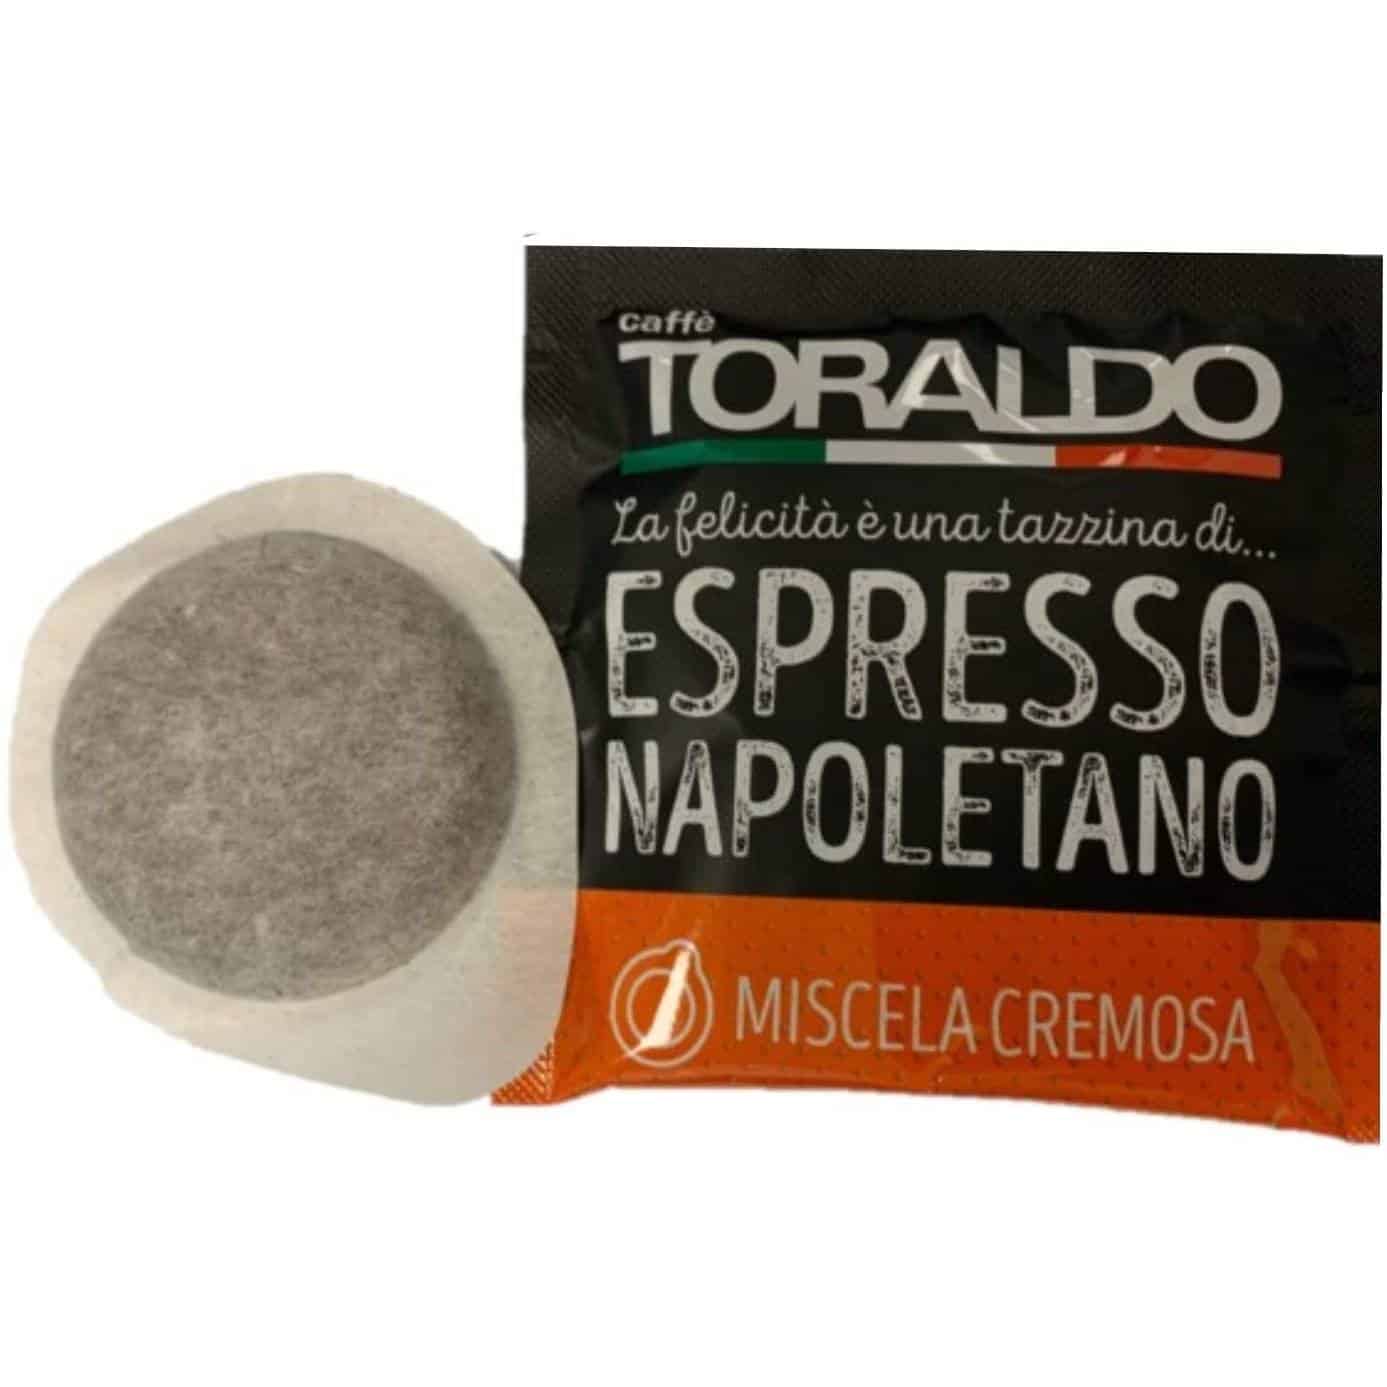 Caffè Toraldo Dek 50 cialde - Morena